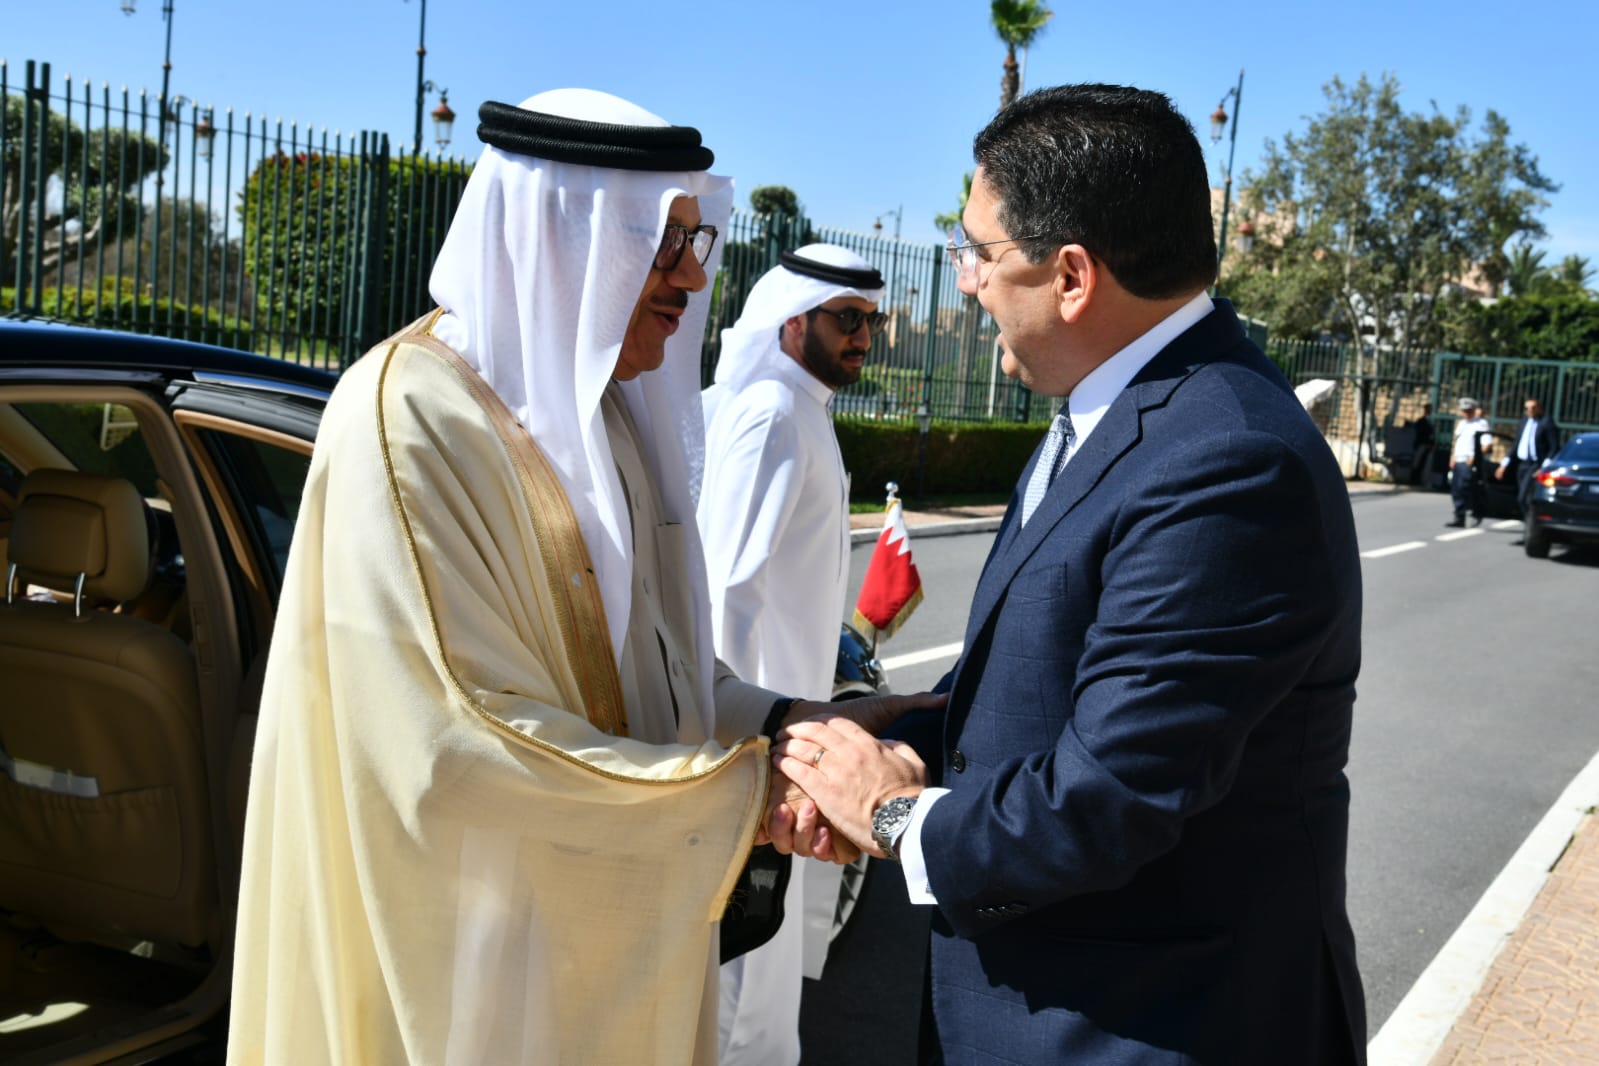 بوريطة يستقبل وزير خارجية مملكة البحرين